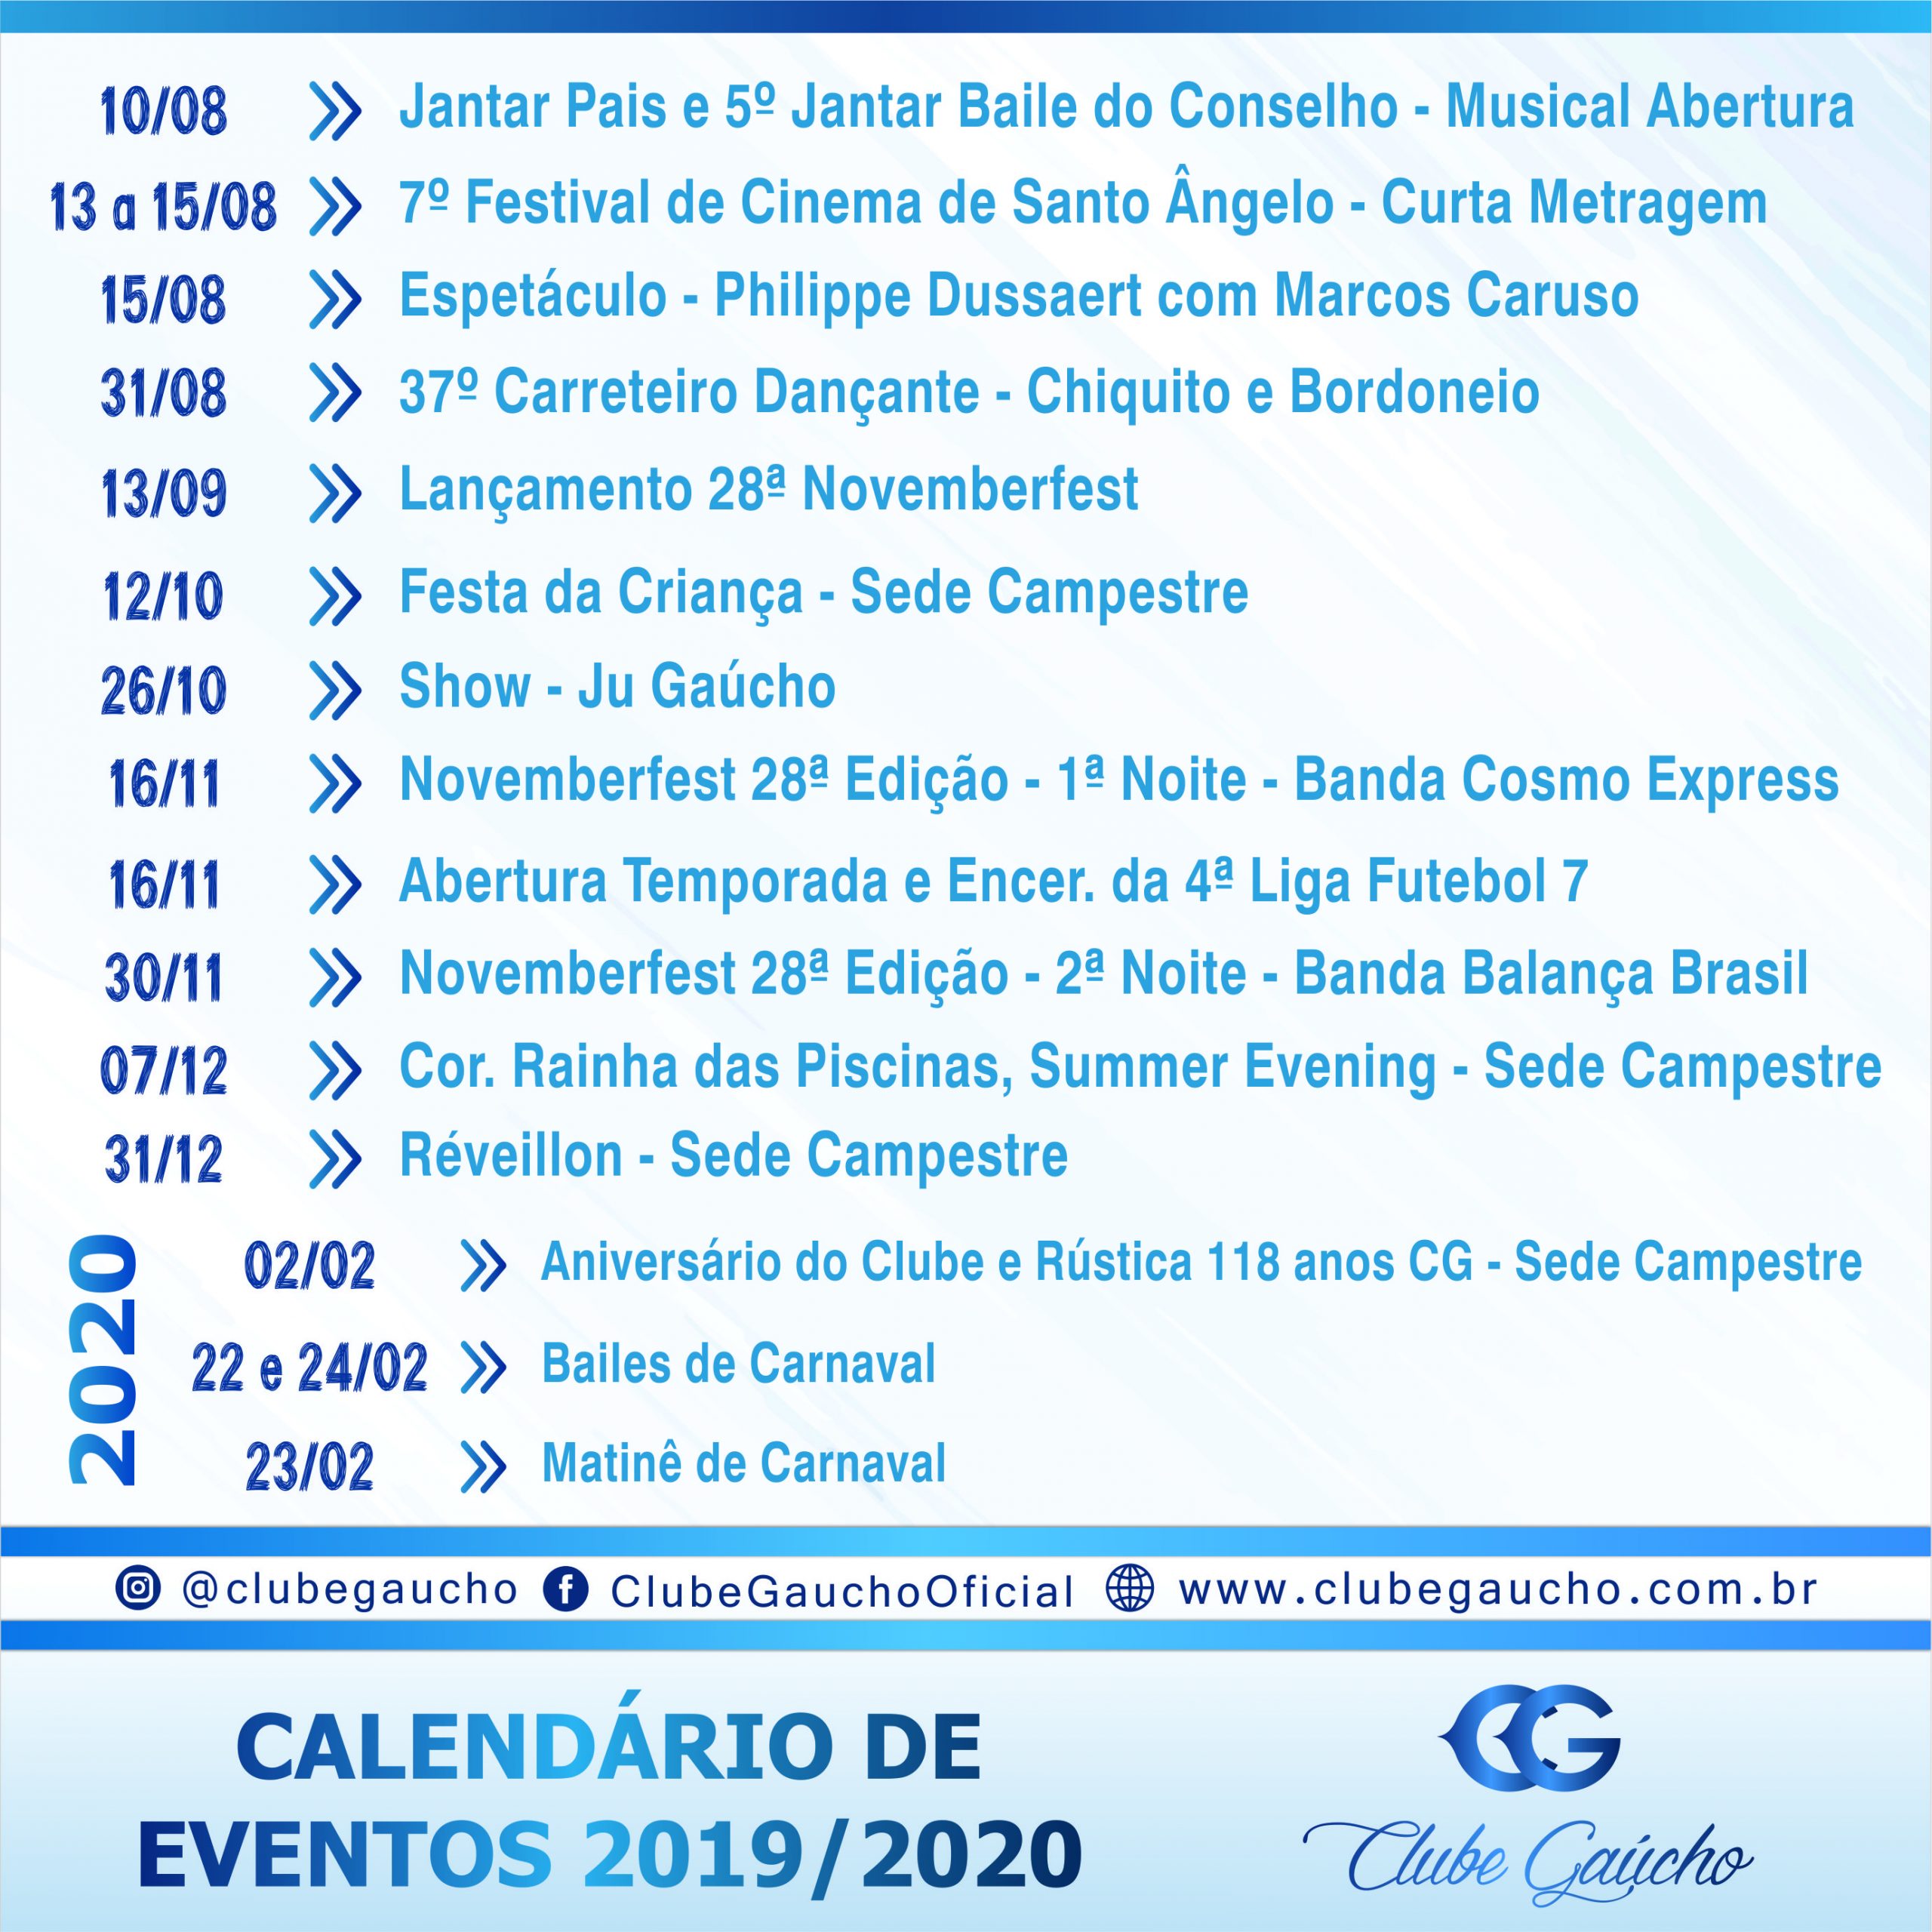 Calendário de eventos 2019/2020